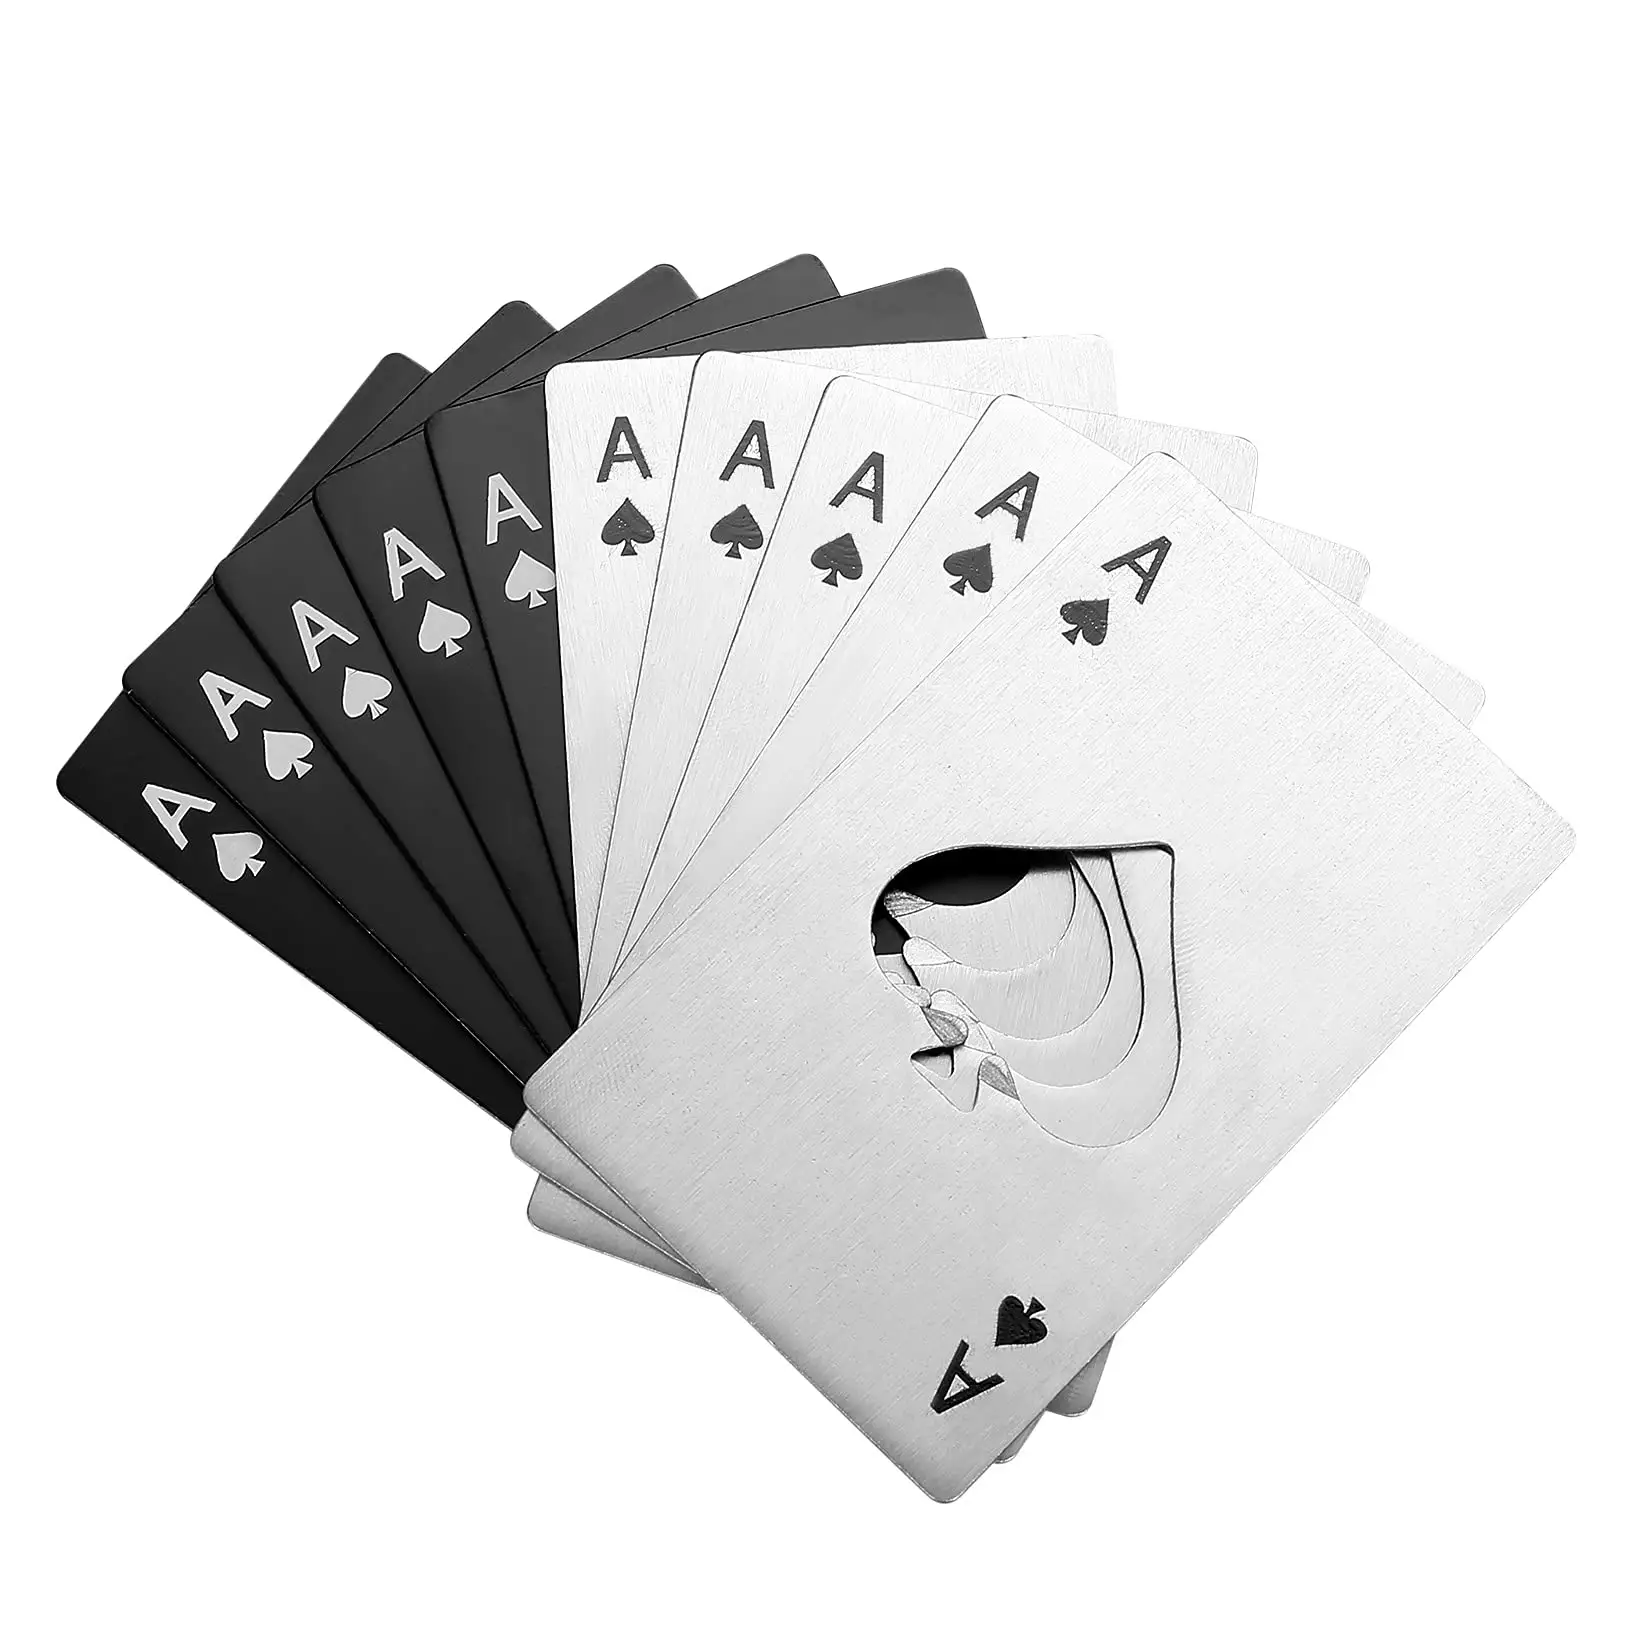 Ace di picche apribottiglie carta da Poker in acciaio inox portatile in metallo carta di credito bottiglia di birra può tappo apriscatole per tasca del portafoglio